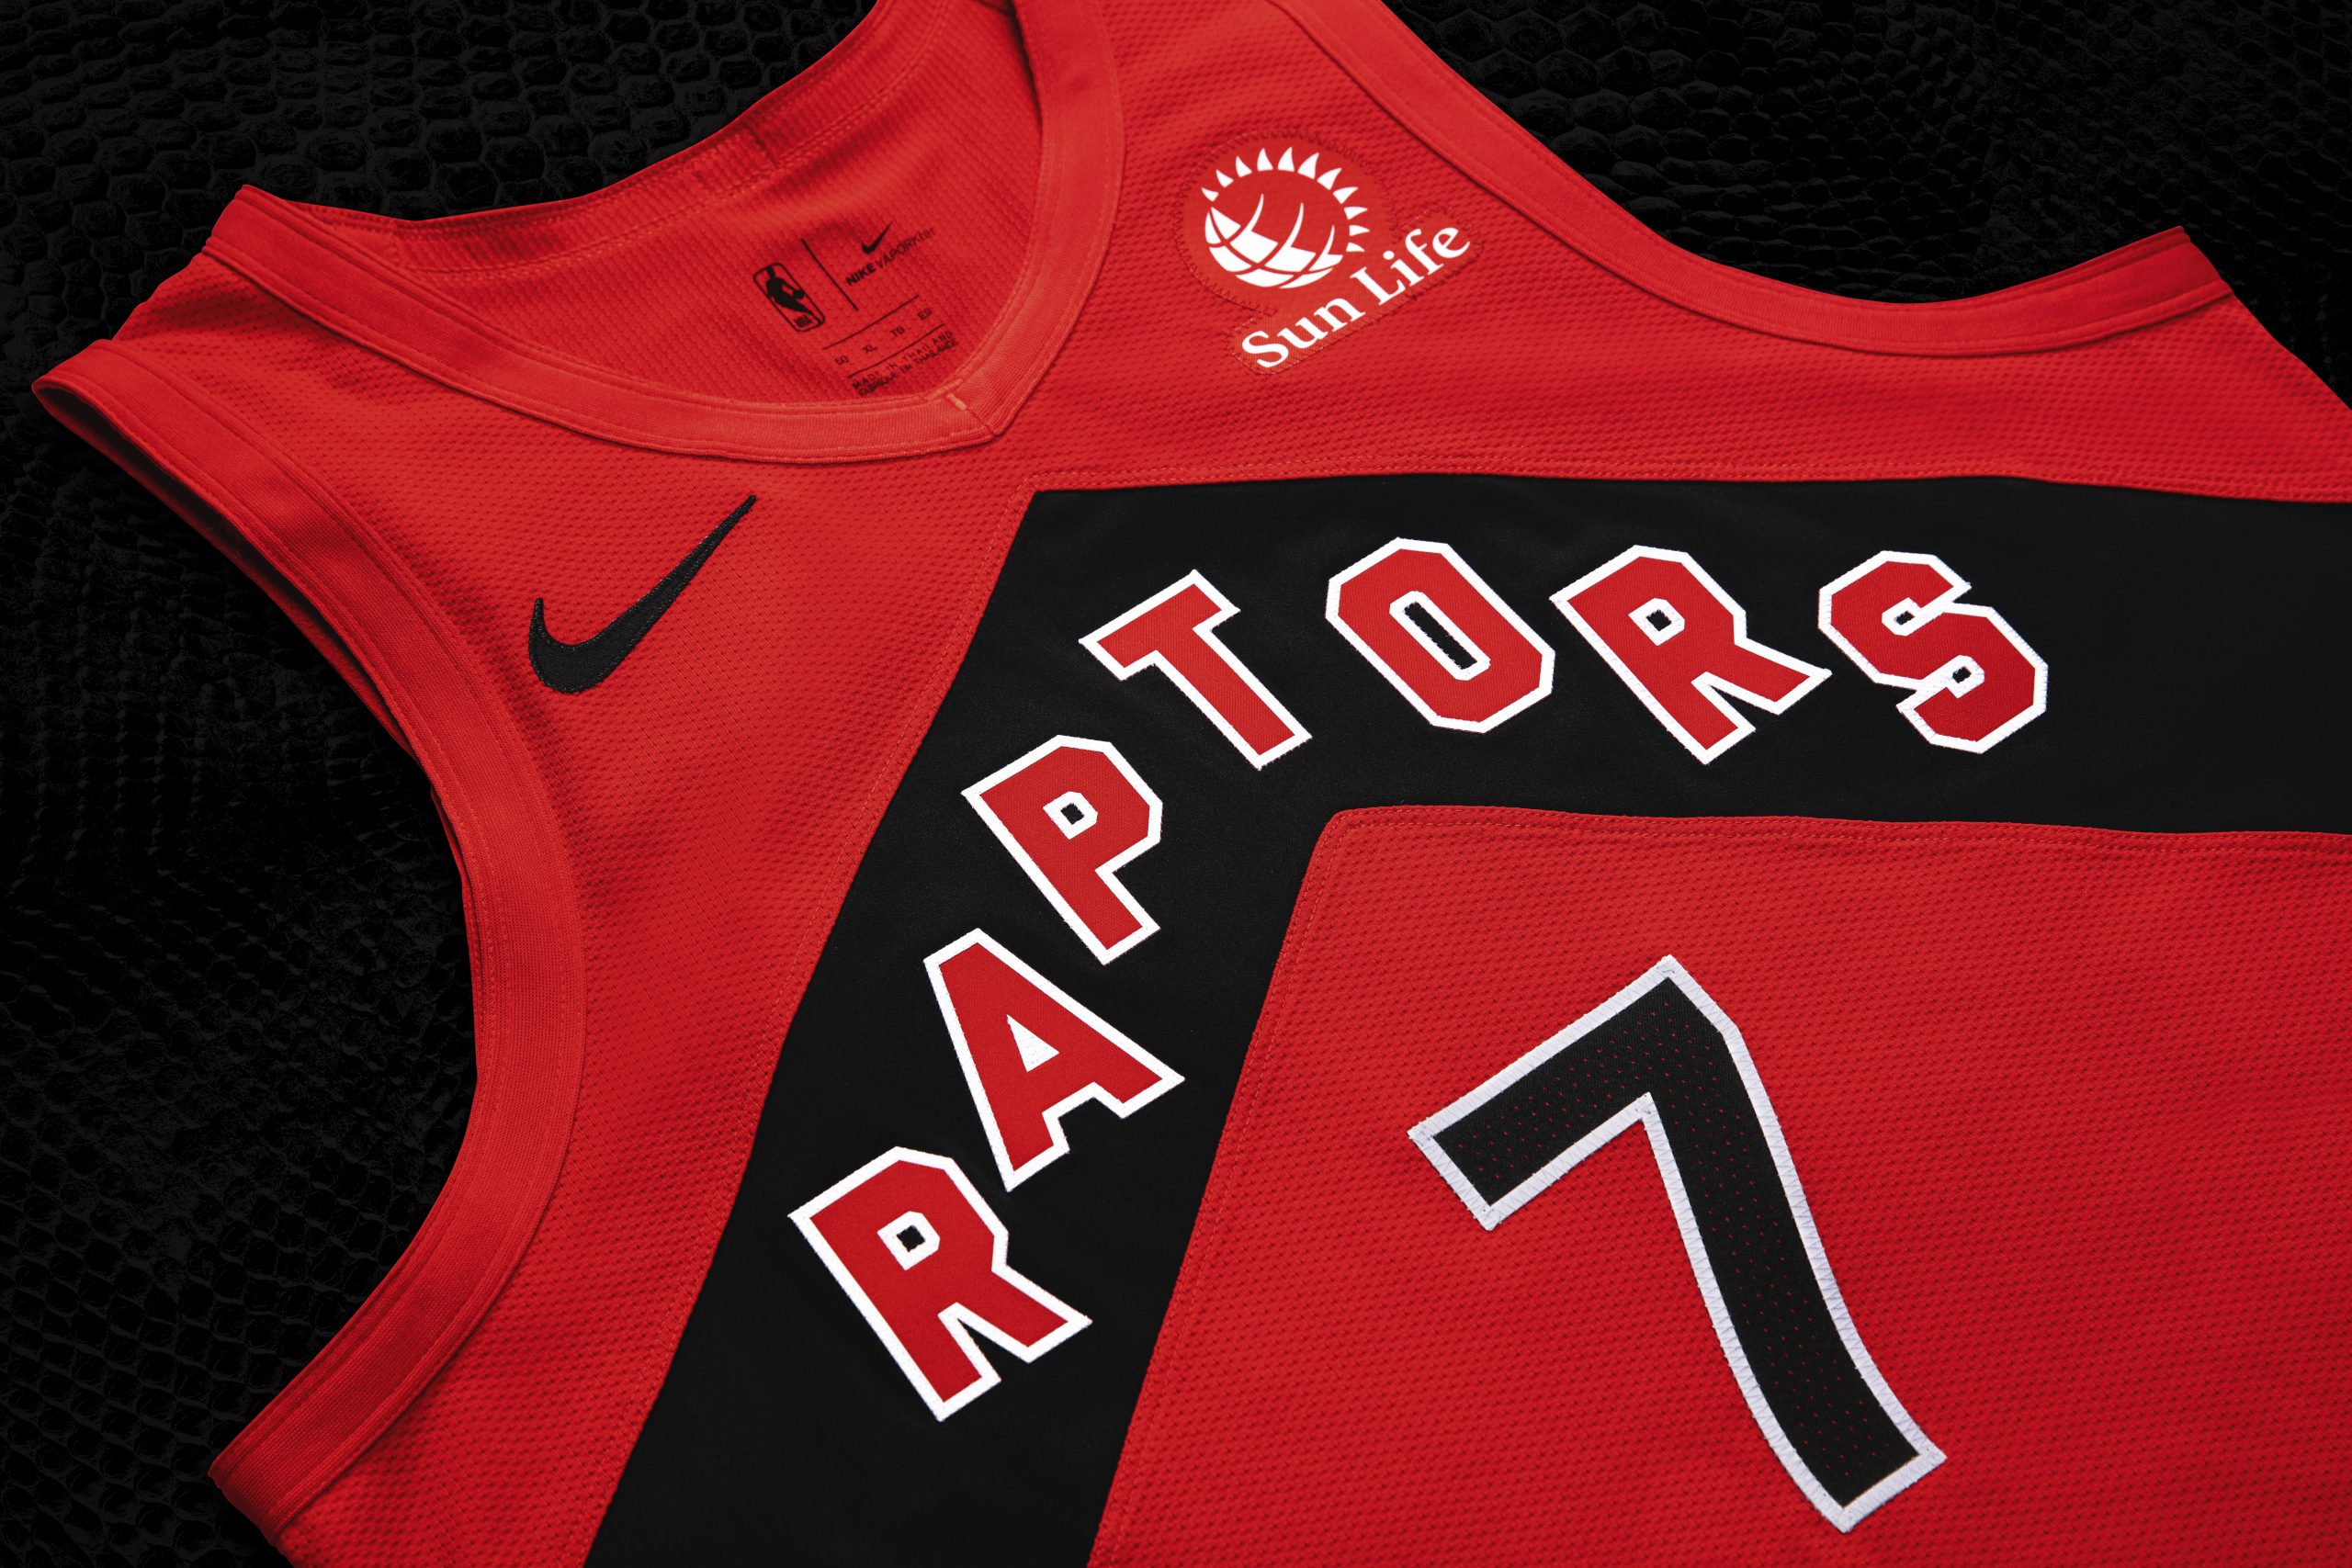 Toronto Raptors unveil new team uniforms